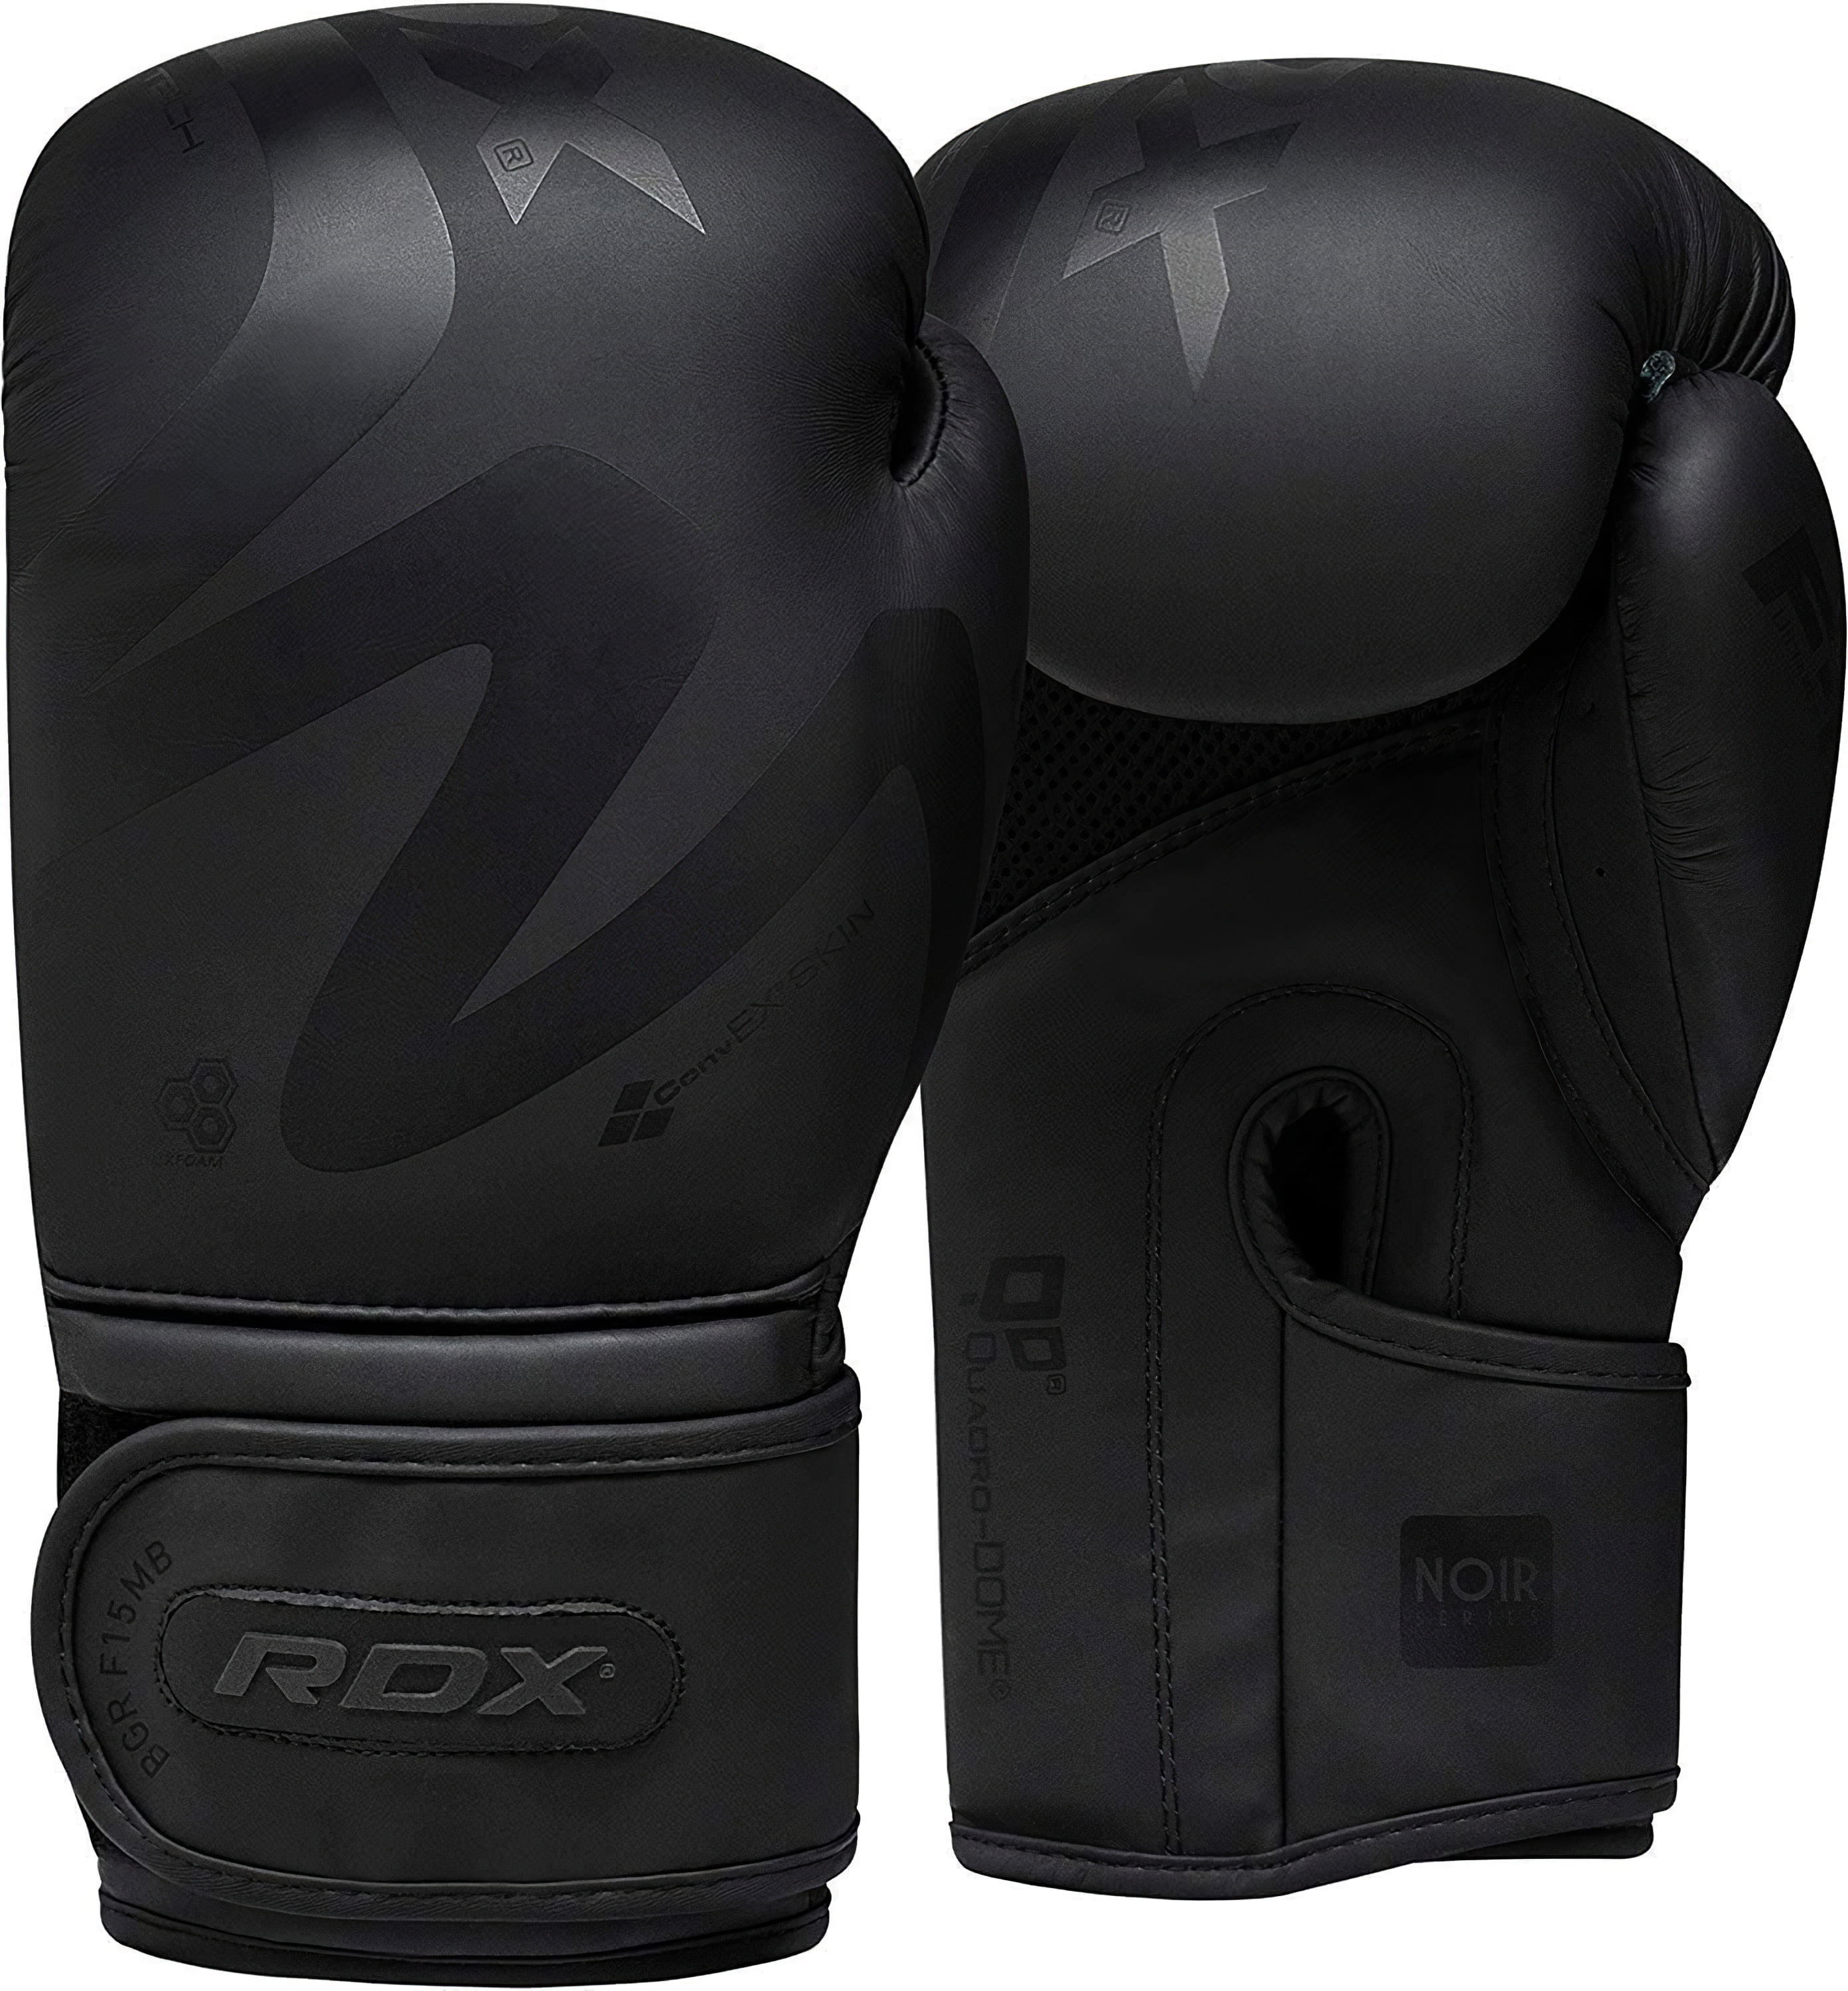 RDX Boxing Glove Semi Contact Taekwondos MMA Muay Thai Kickboxing Punching Mitts 